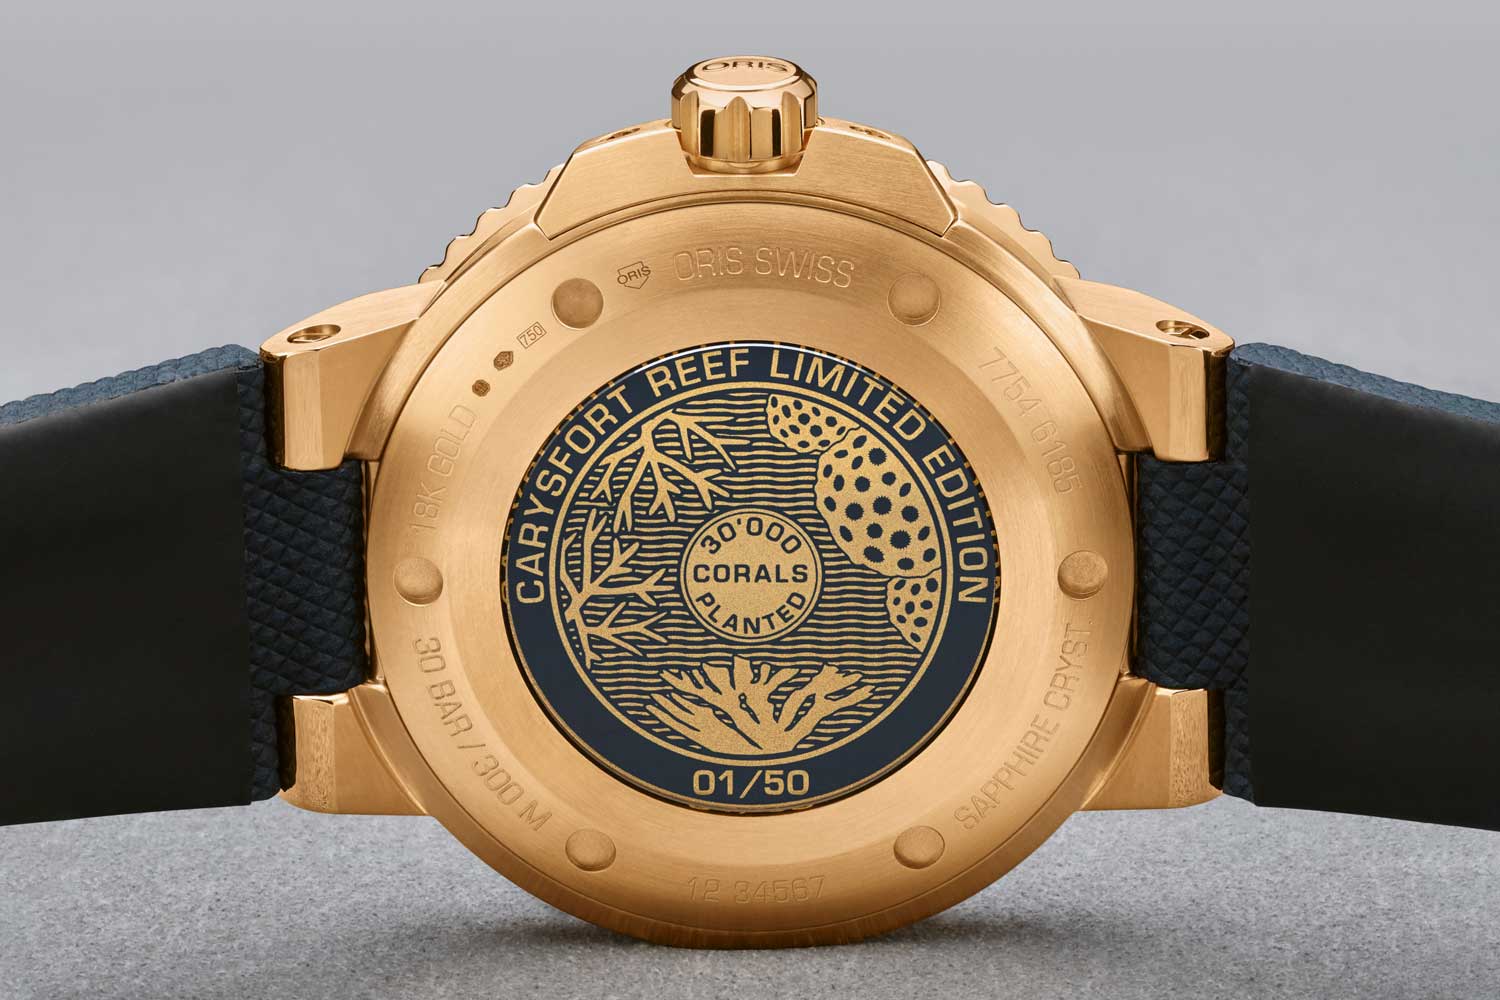 Đồng hồ Oris Carysfort phiên bản giới hạn Yellow Gold Aquis